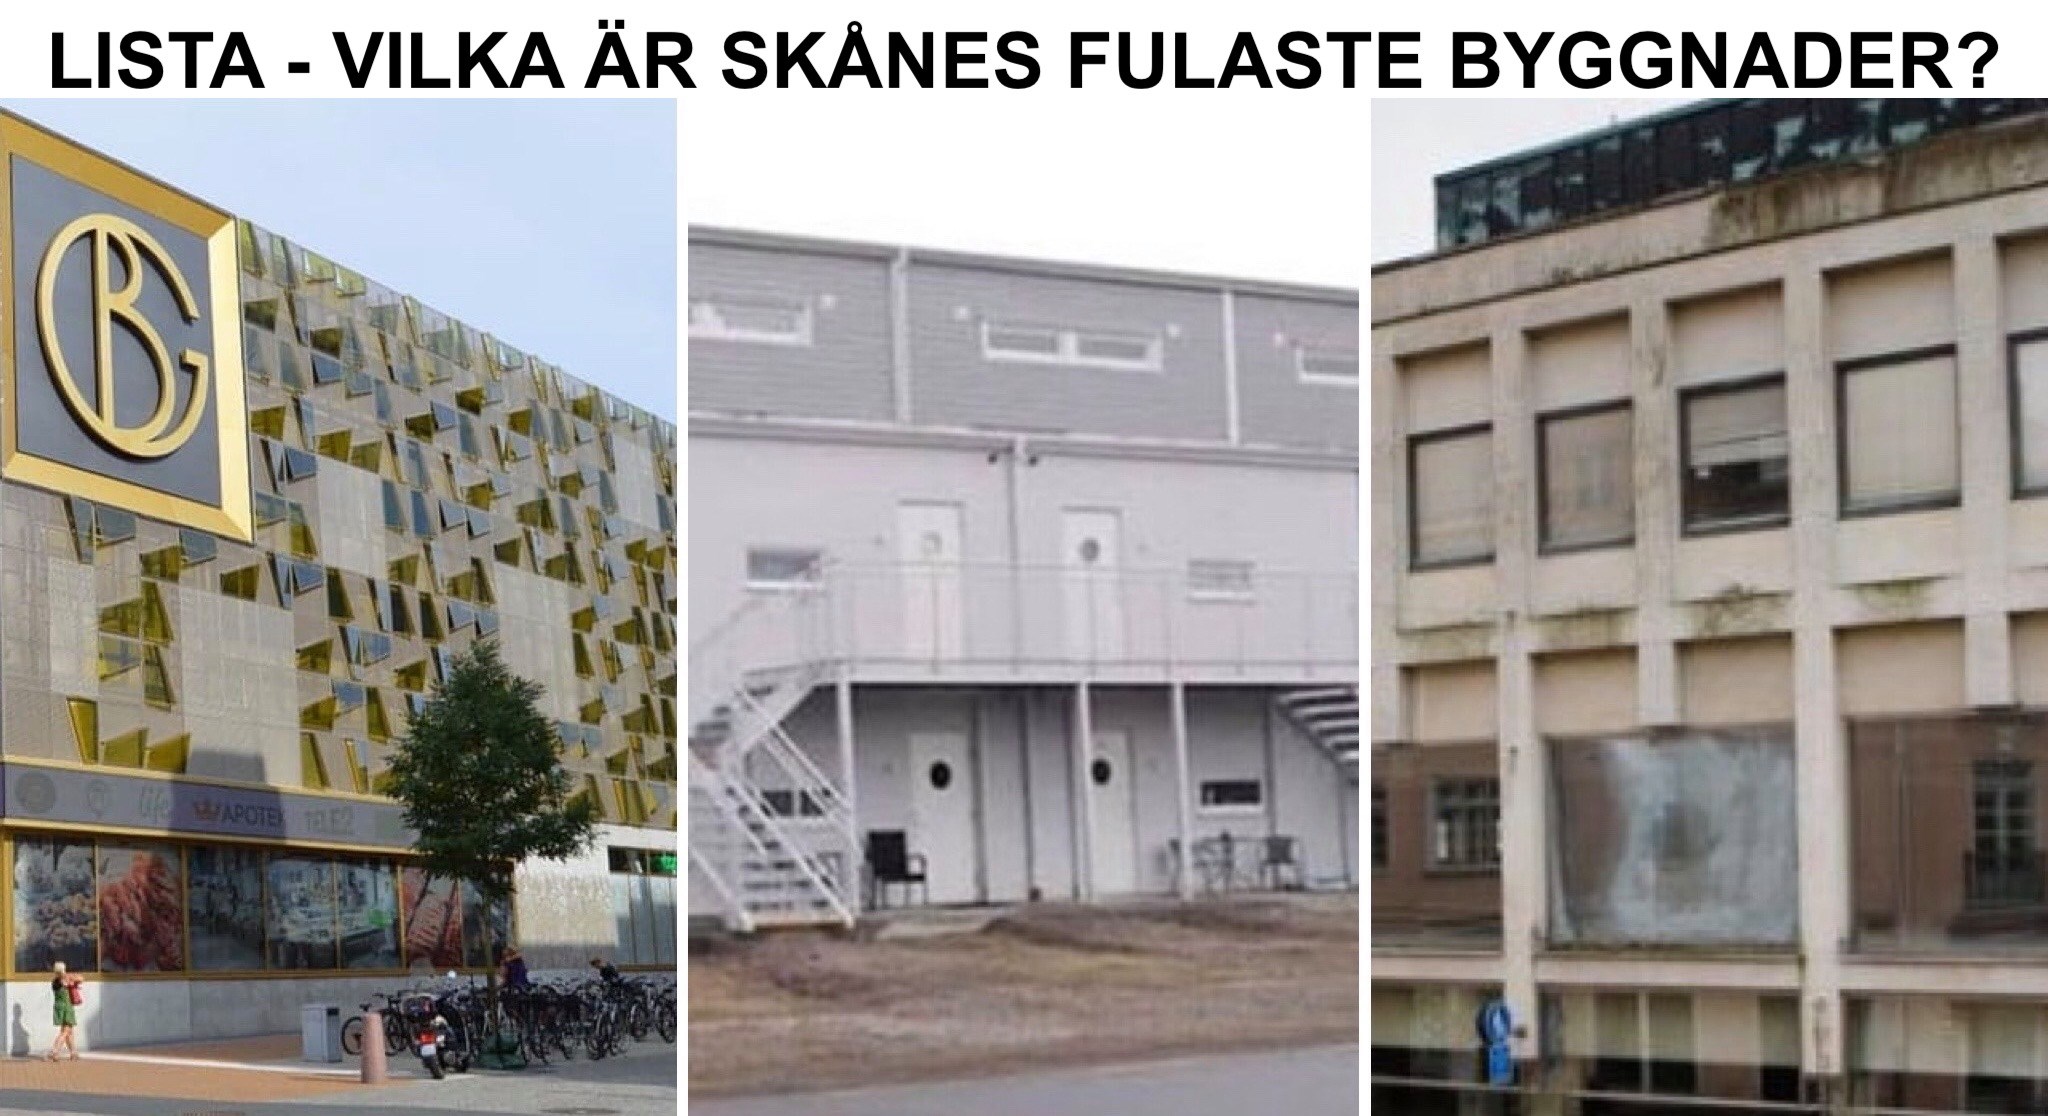 Lista - Skånes fulaste byggnader, dvs fulast i Kristianstad,  Landskrona, Ystad, Åhus, Ängelholm, Hässleholm, Skurup, Simrishamn, Båstad, Skanör-Falsterbo, Hörby, Tomelilla, Sjöbo, Eslöv, Trelleborg och Kävlinge.